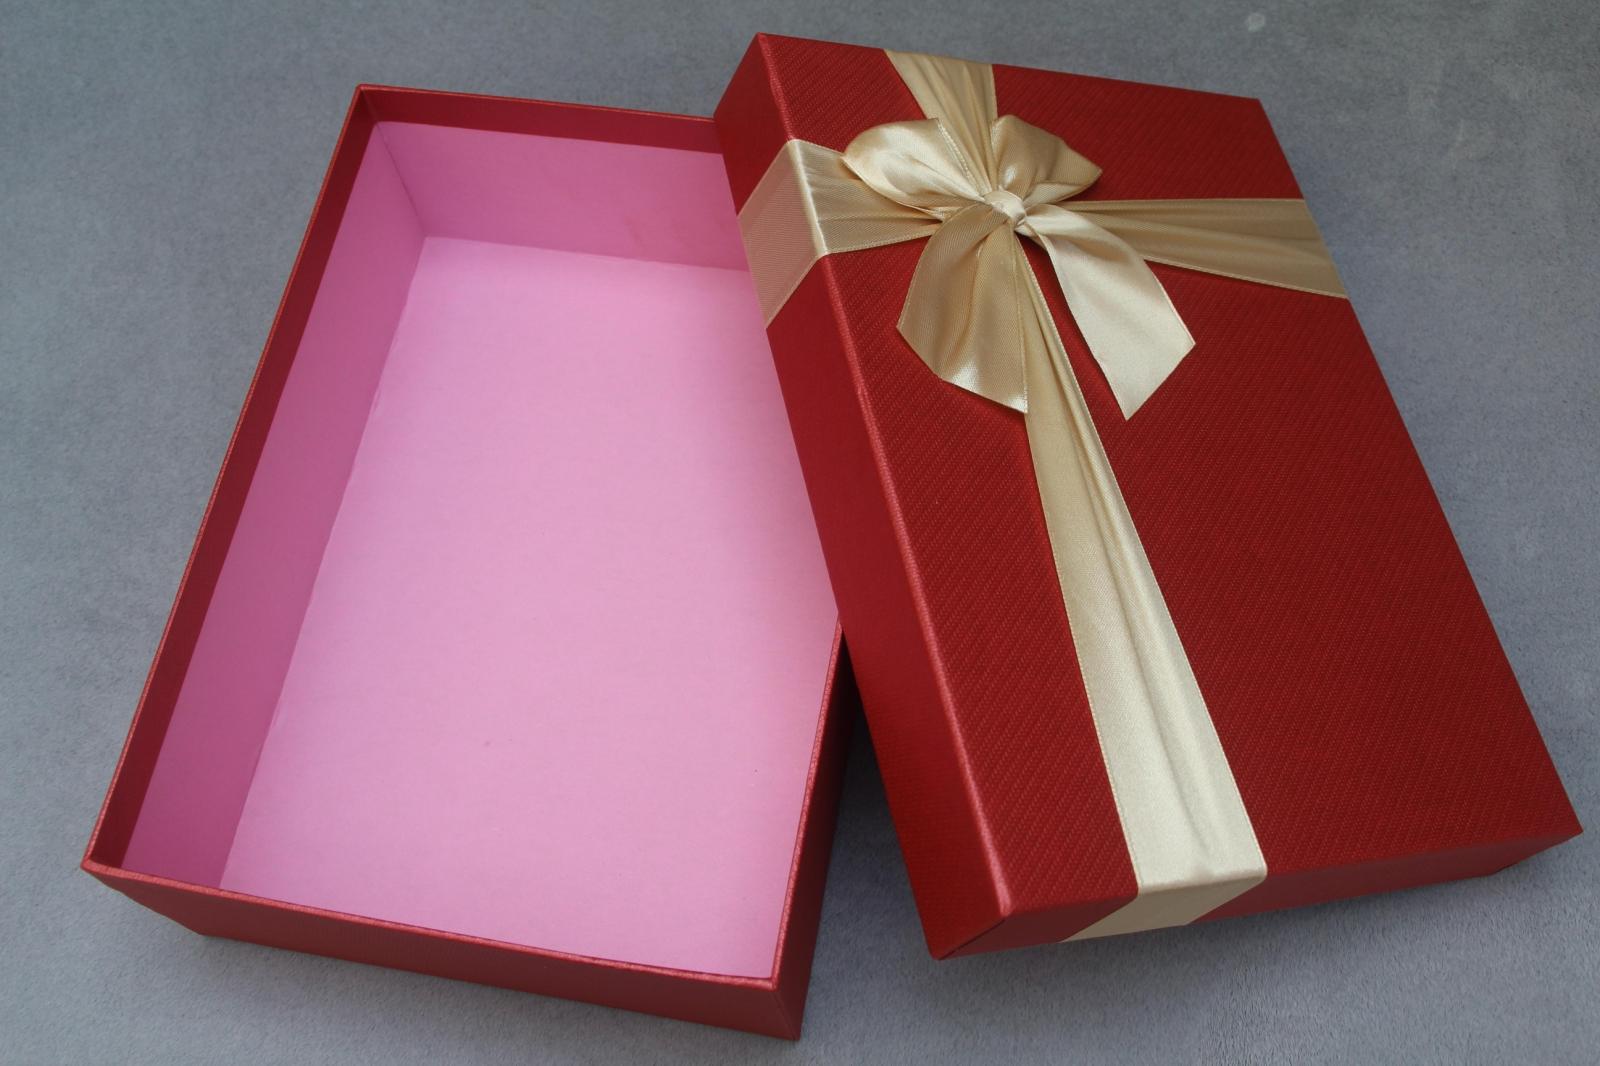 韩版大号长方形礼品盒围巾包装盒礼物盒收纳盒纸盒批发